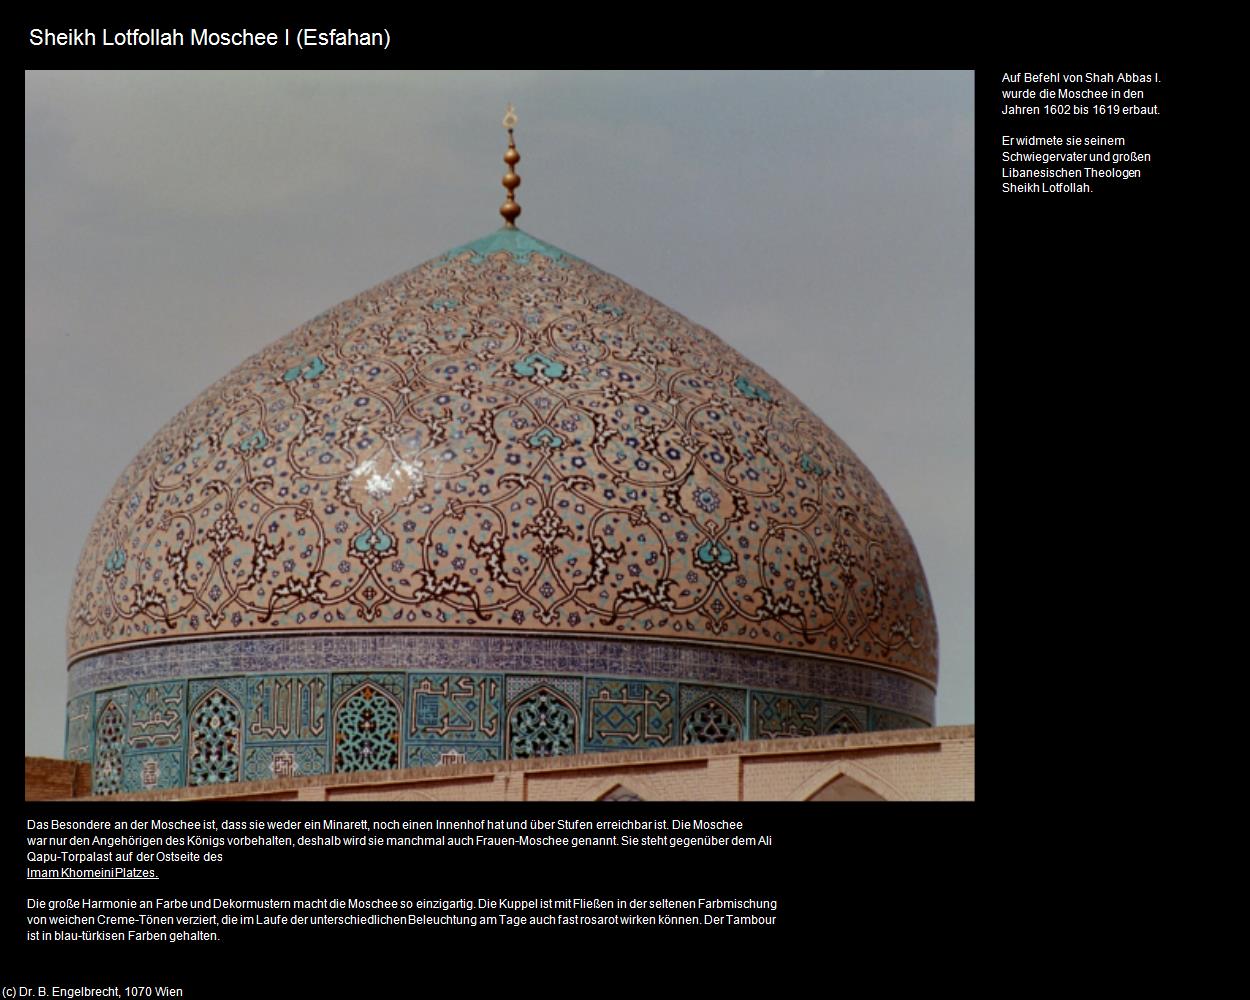 Sheikh Lotfollah Moschee I (Esfahan) in Iran(c)B.Engelbrecht